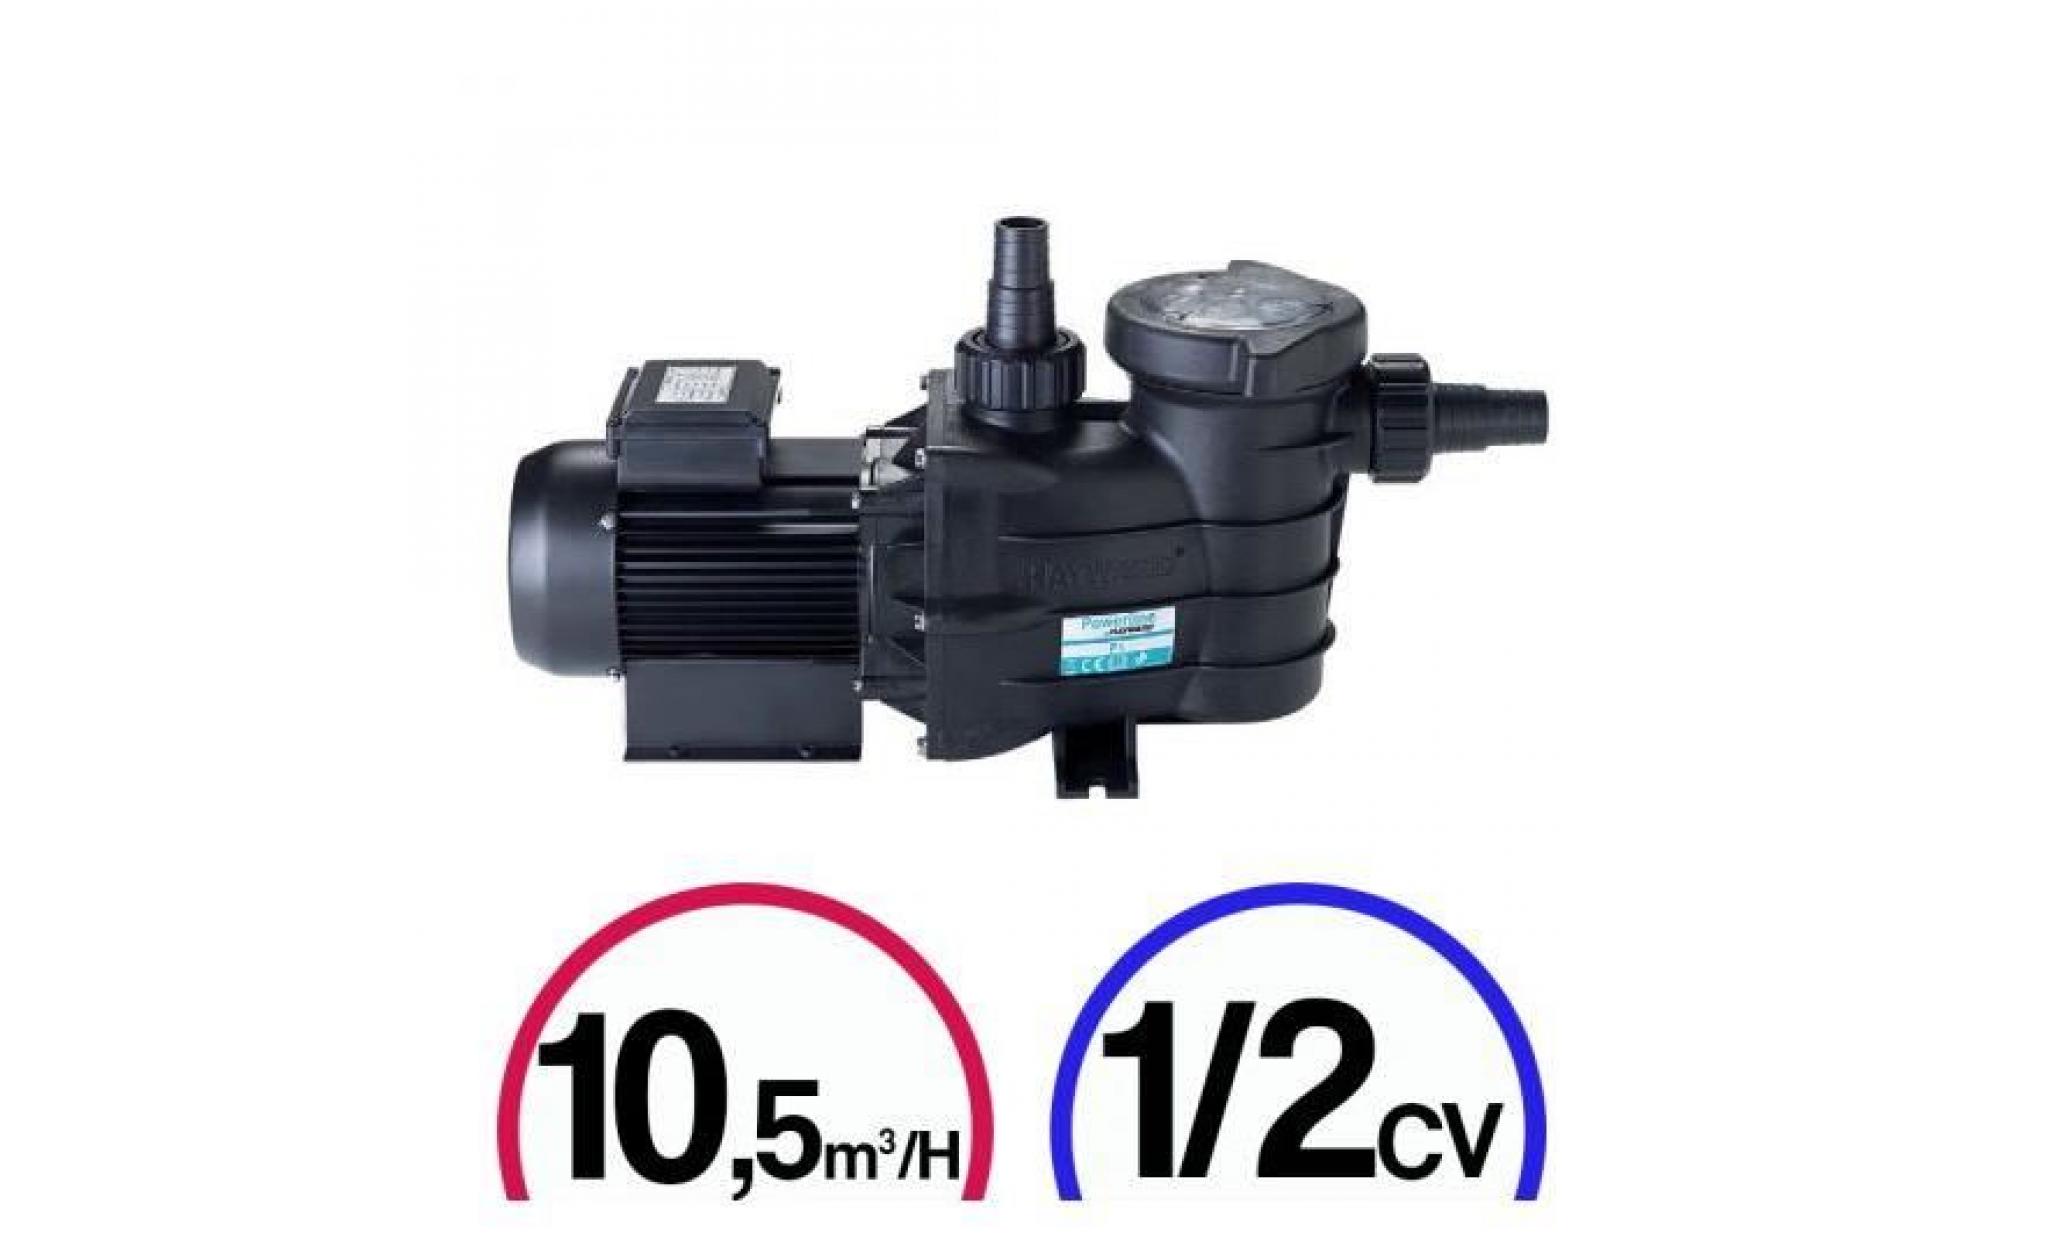 pompe filtration piscine   powerline 1/2cv mono 10,5m³/h   hayward